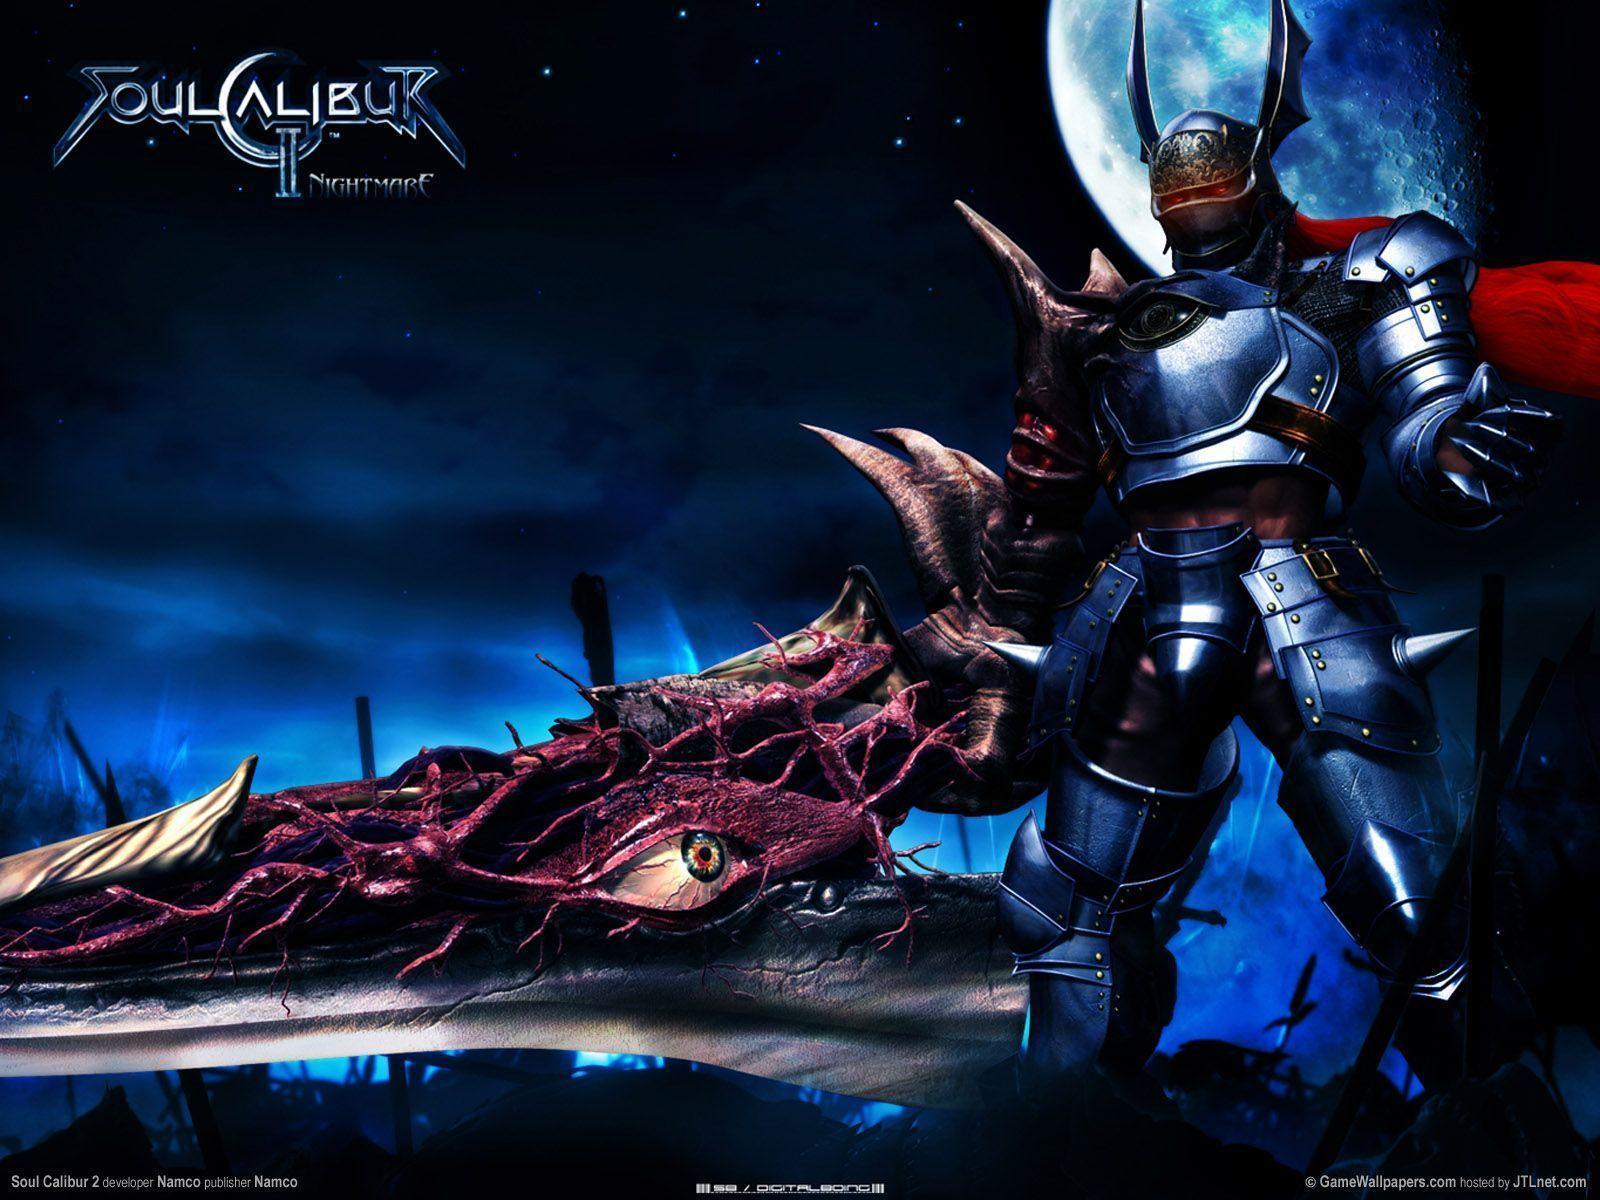 Fondos de pantalla de Soul Calibur 2. Wallpaper de Soul Calibur